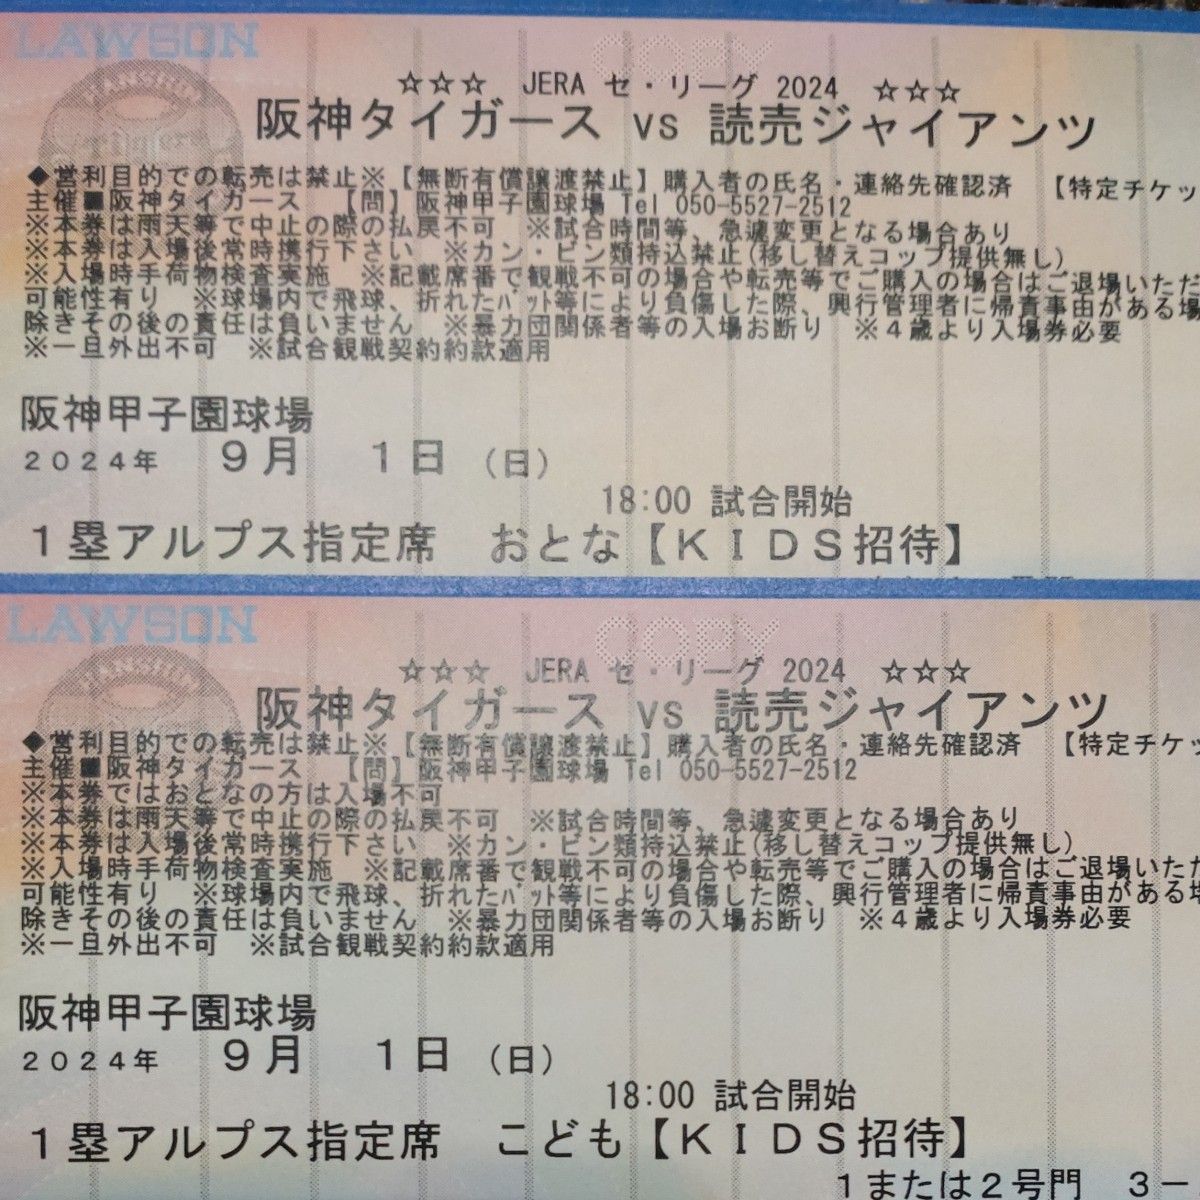 【完売日】阪神タイガース招待券チケット 9月1日(日)VS 巨人戦 1塁アルプス指定席  2枚(大人1枚・こども1枚)